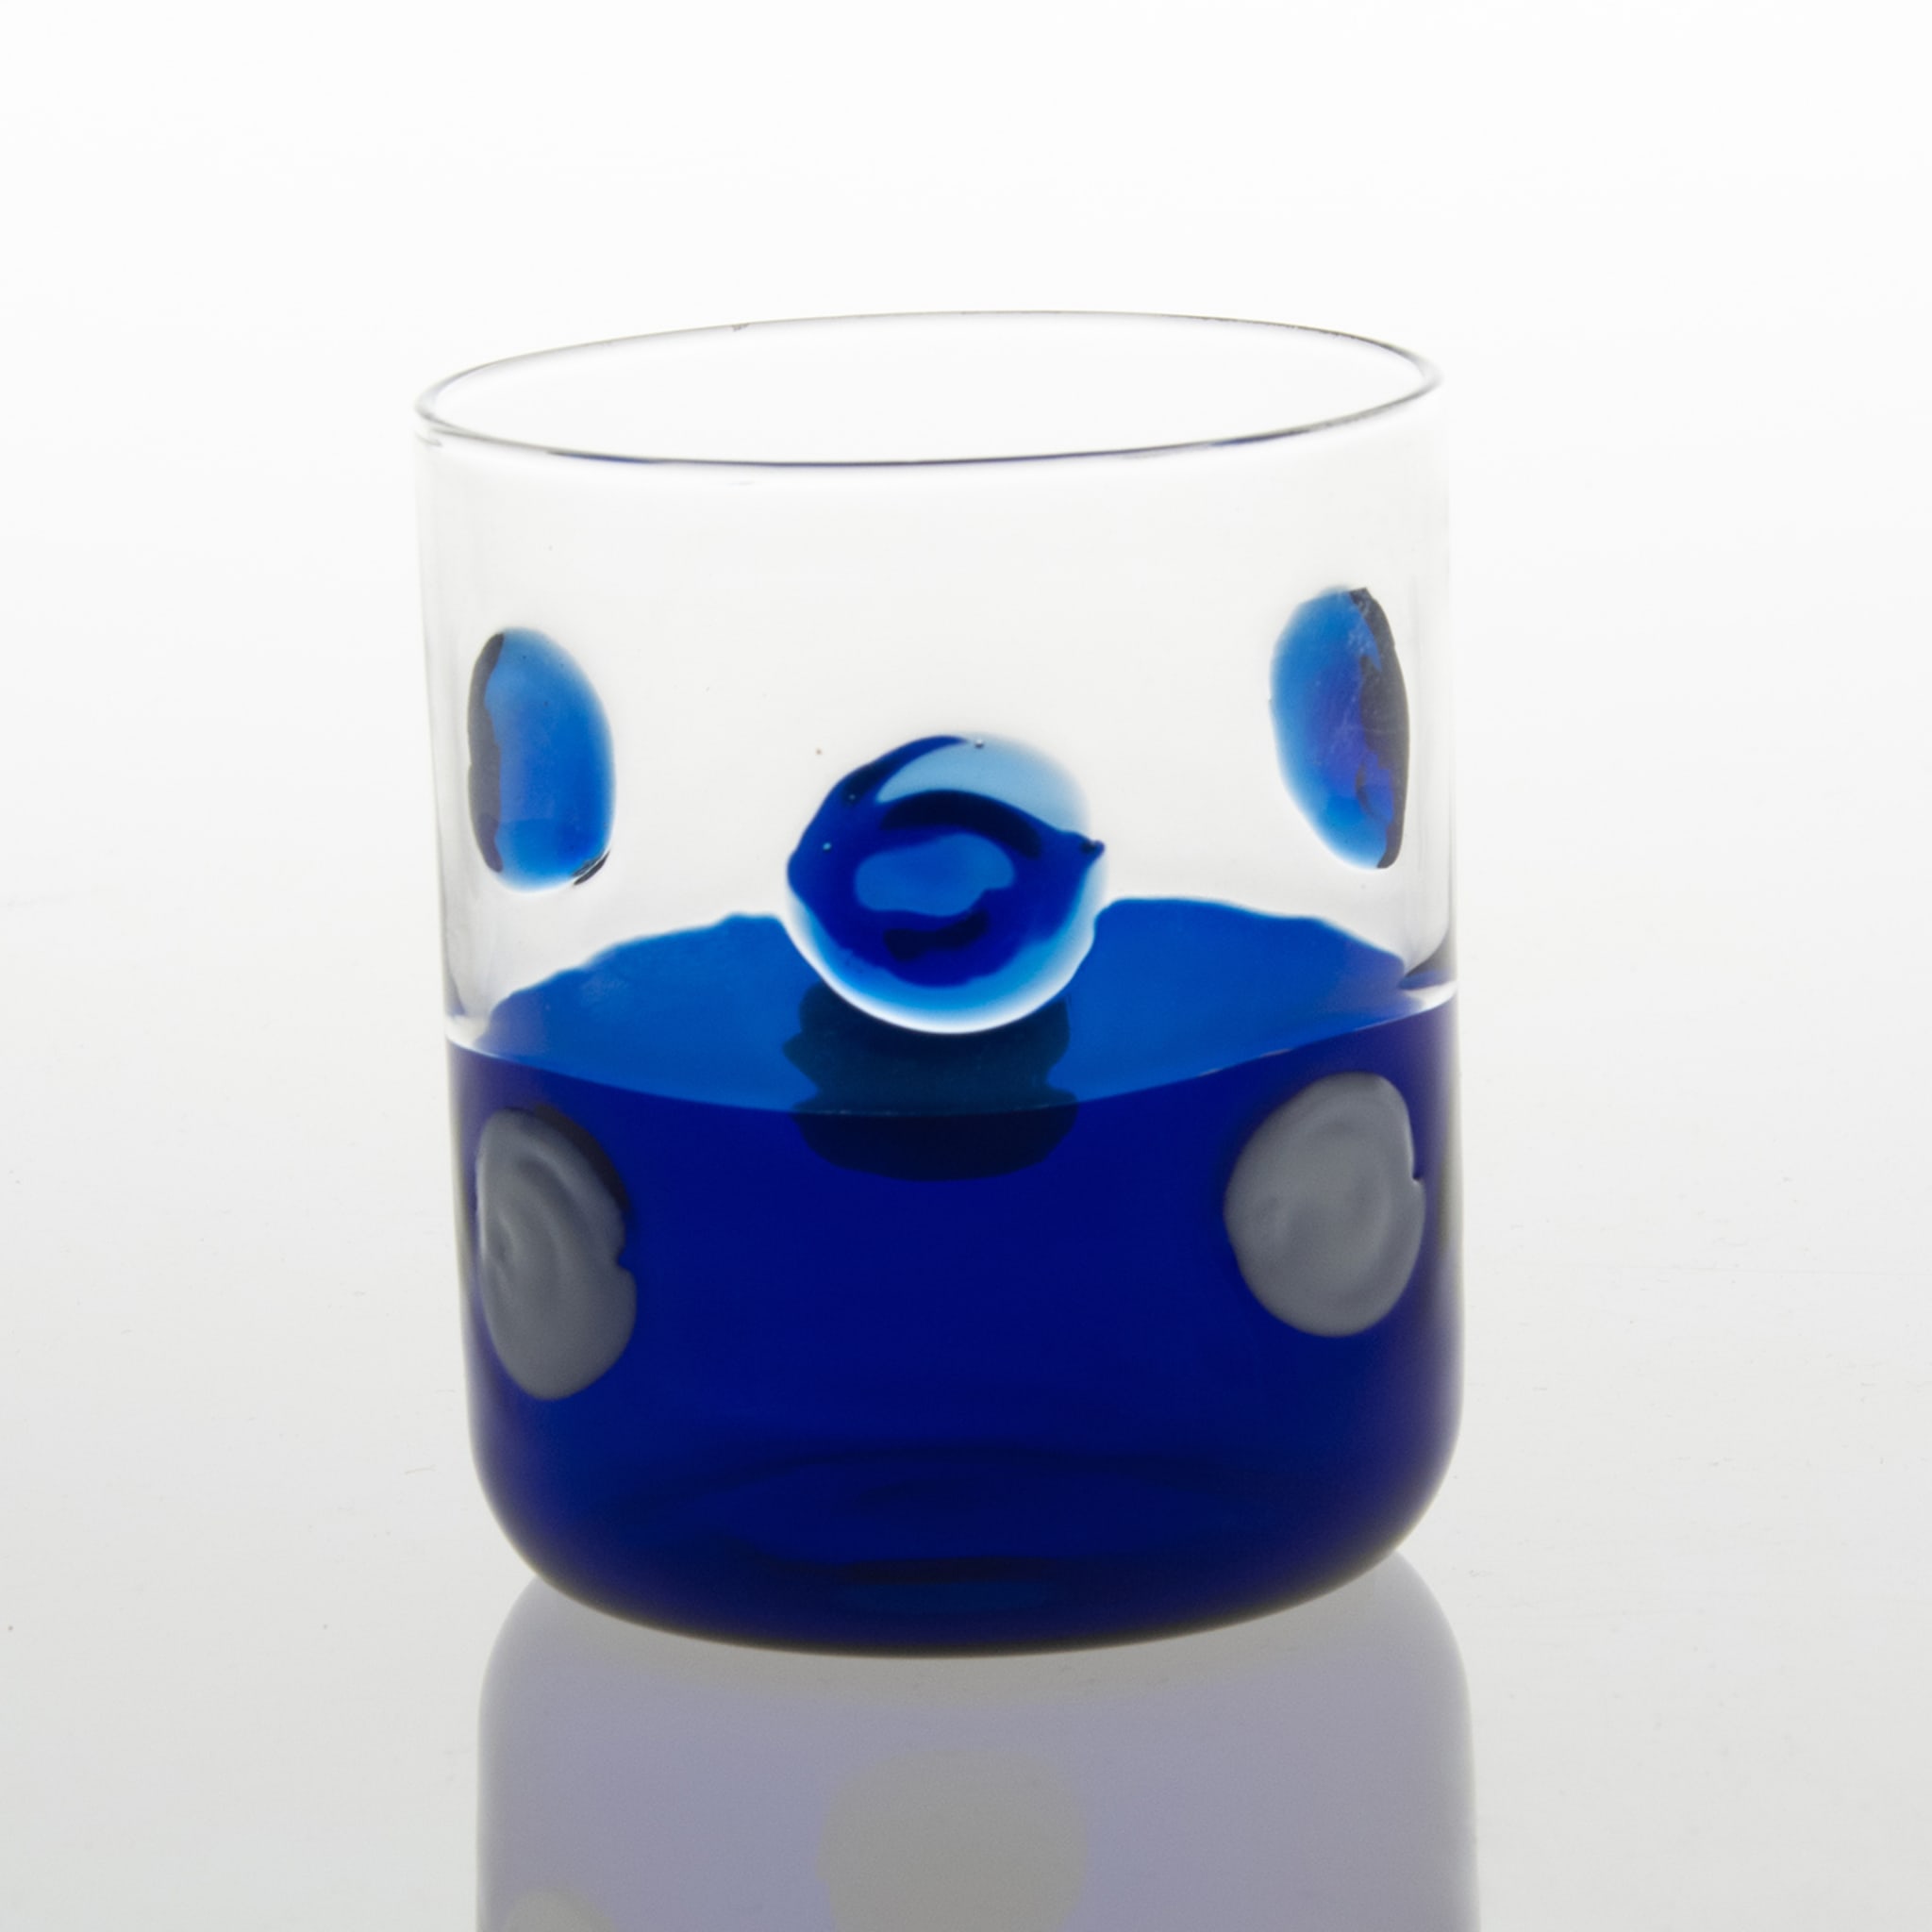 Mezzo & Mezzo Bolle Blue Glass - Alternative view 4